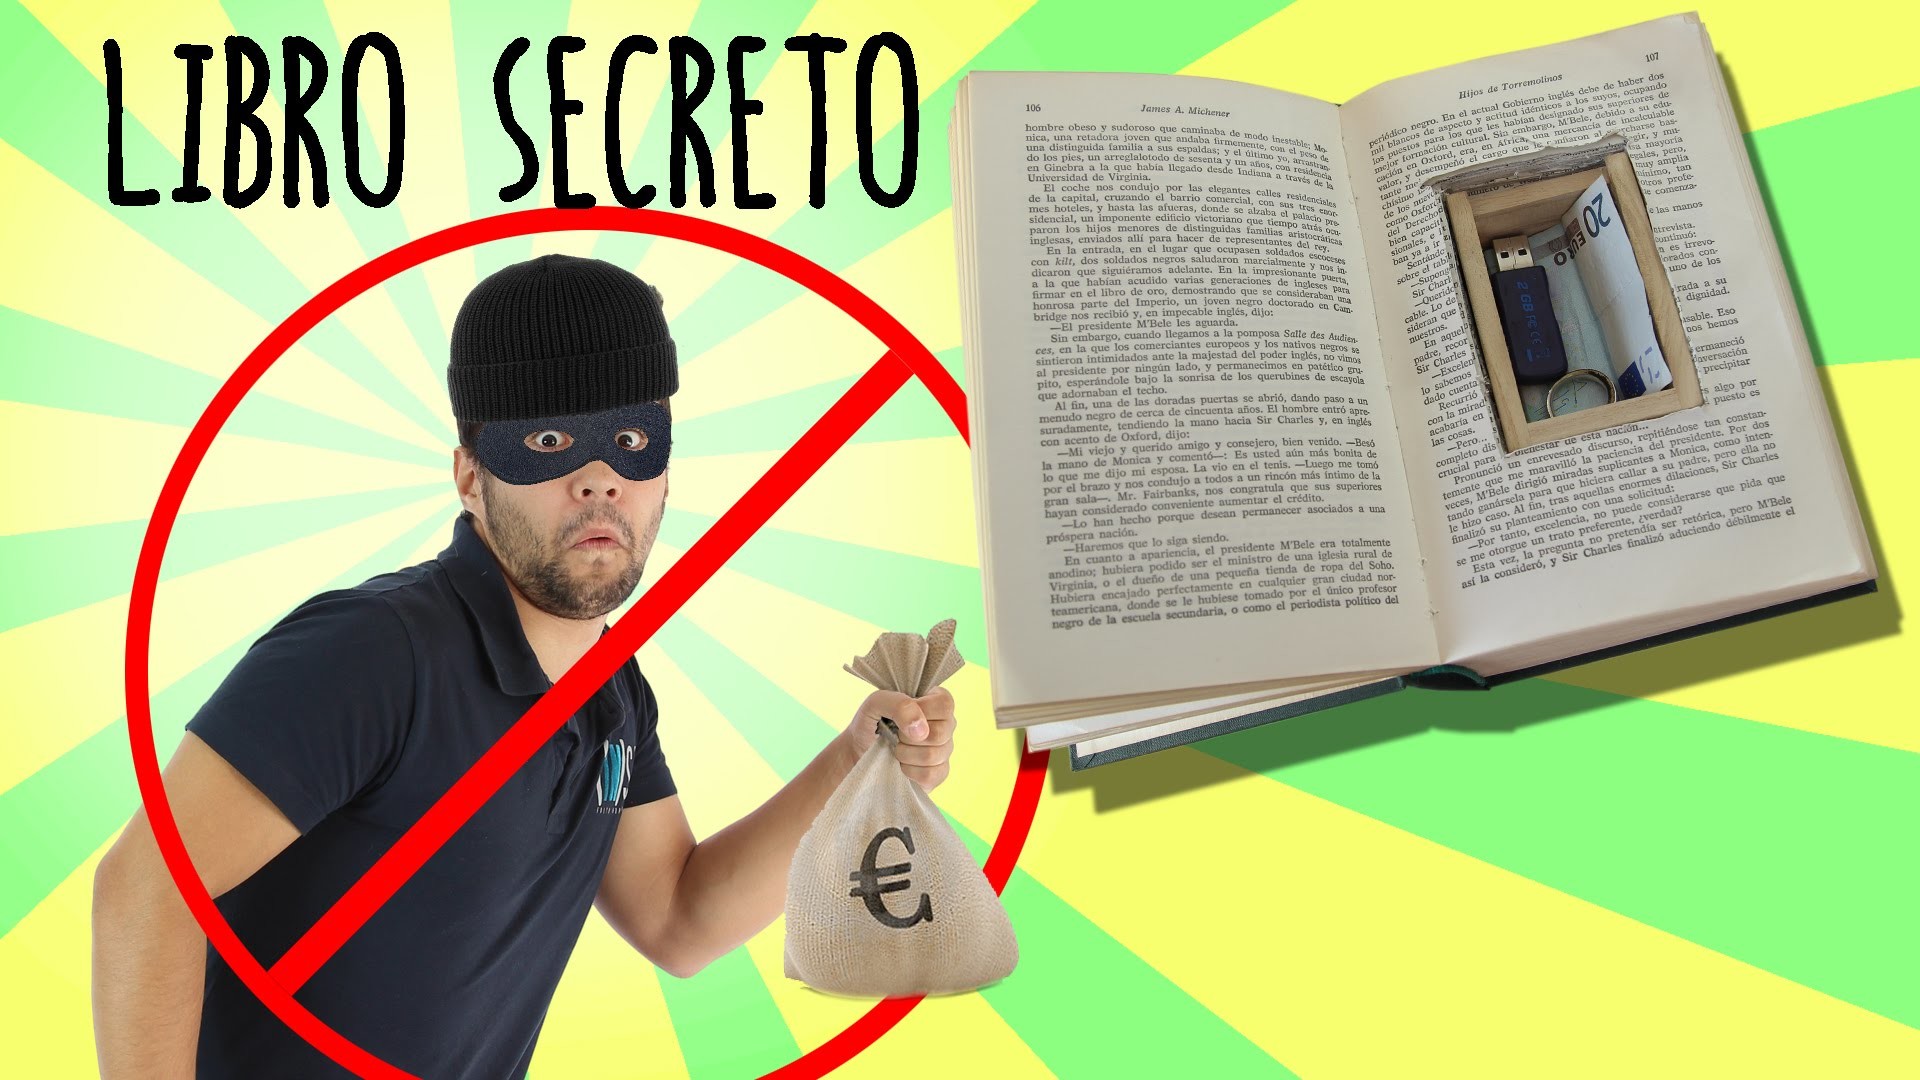 Cómo hacer un escondite secreto con un libro